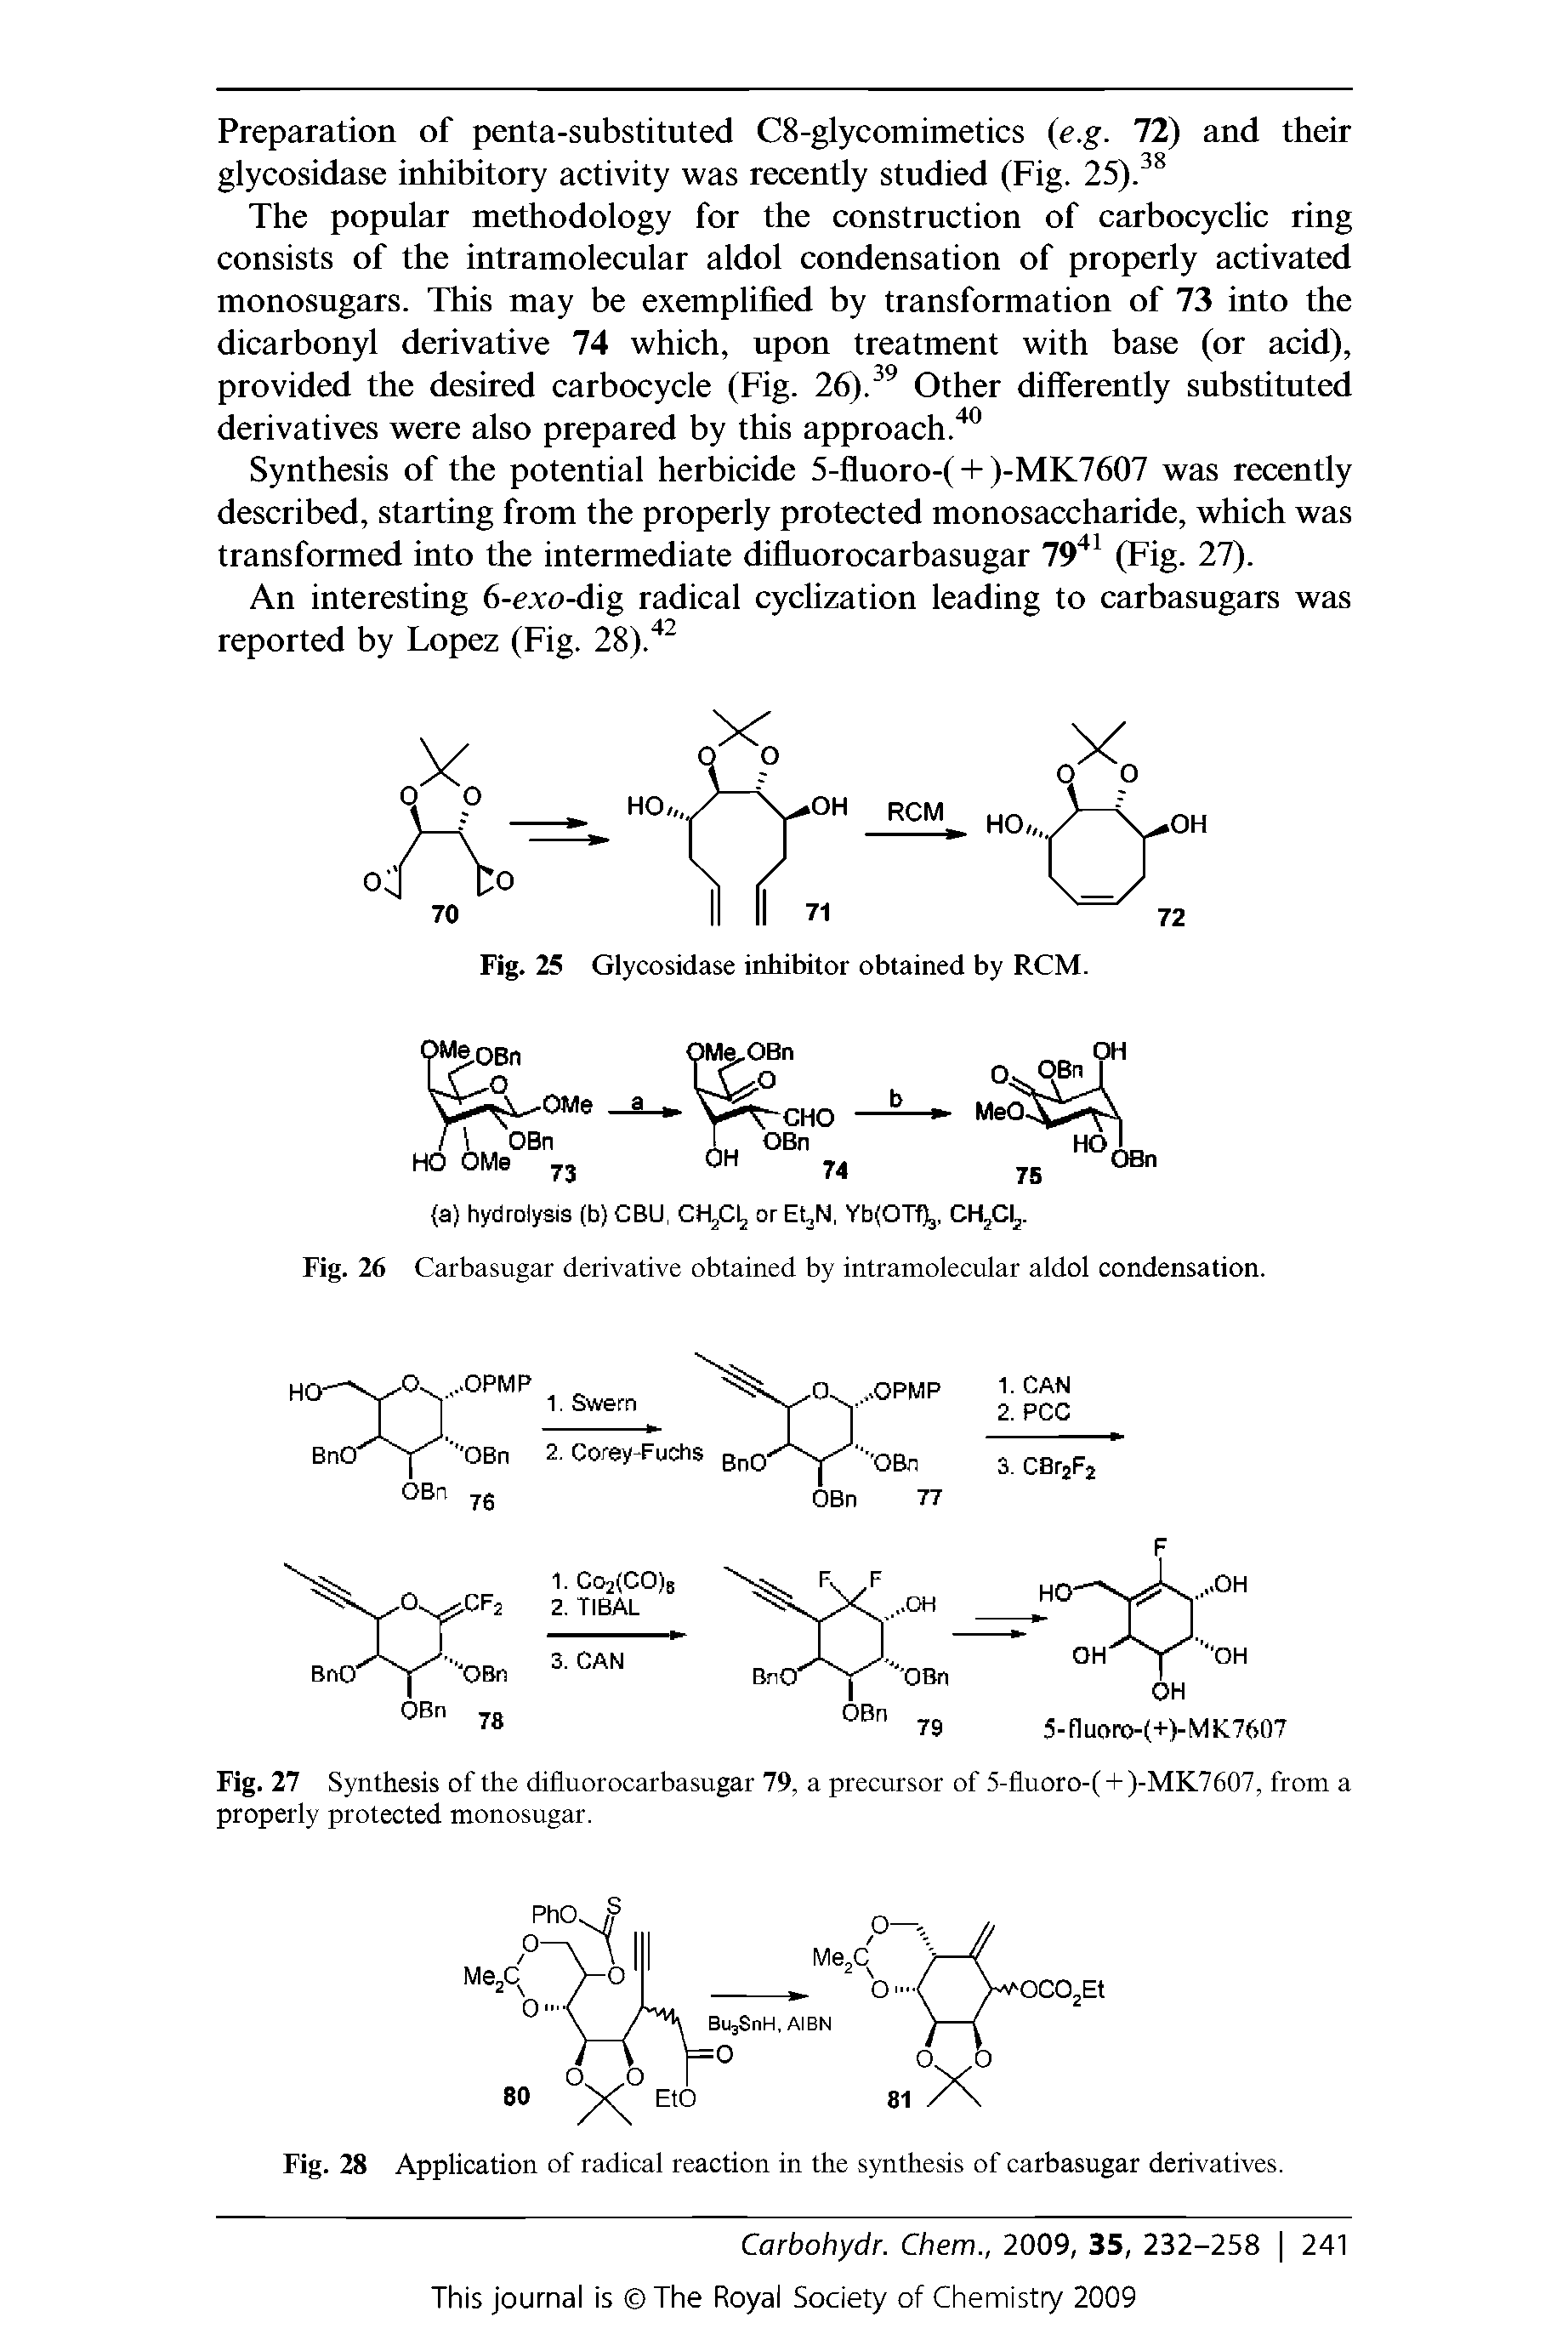 Fig. 26 Carbasugar derivative obtained by intramolecular aldol condensation.